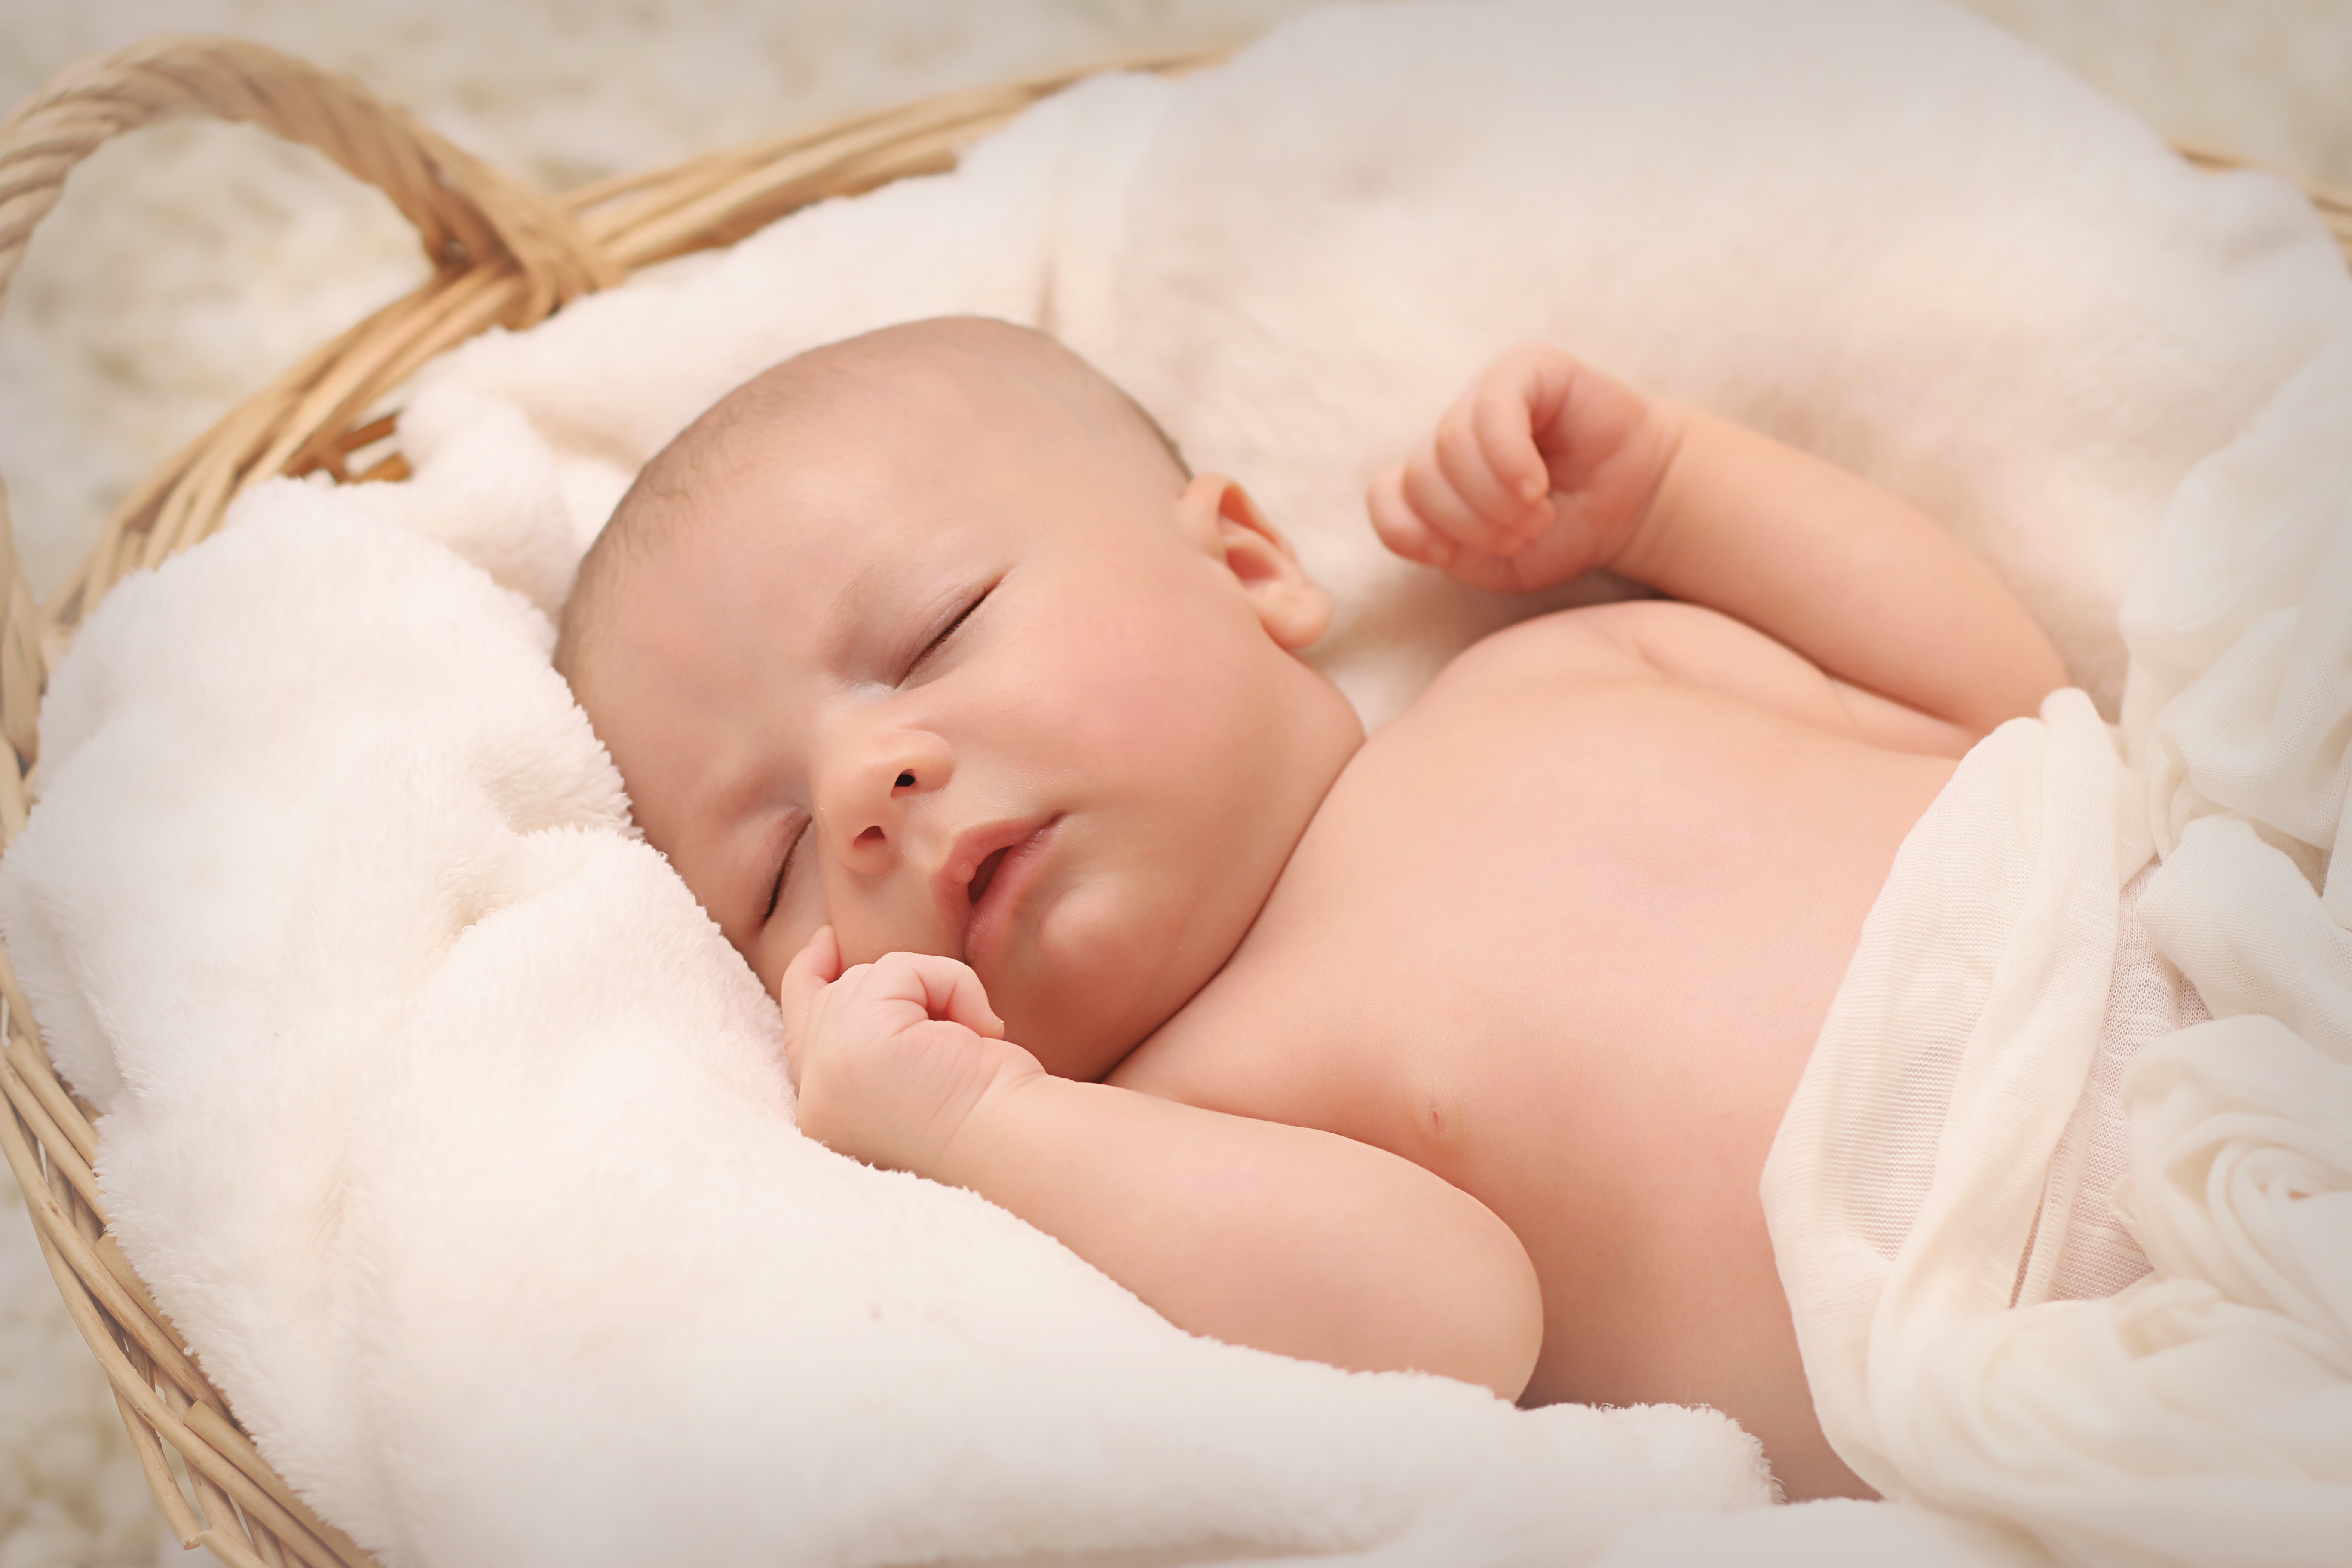 Niñera de bebés recién nacidos, ¿cómo elegir la adecuada? : Sitly Blog